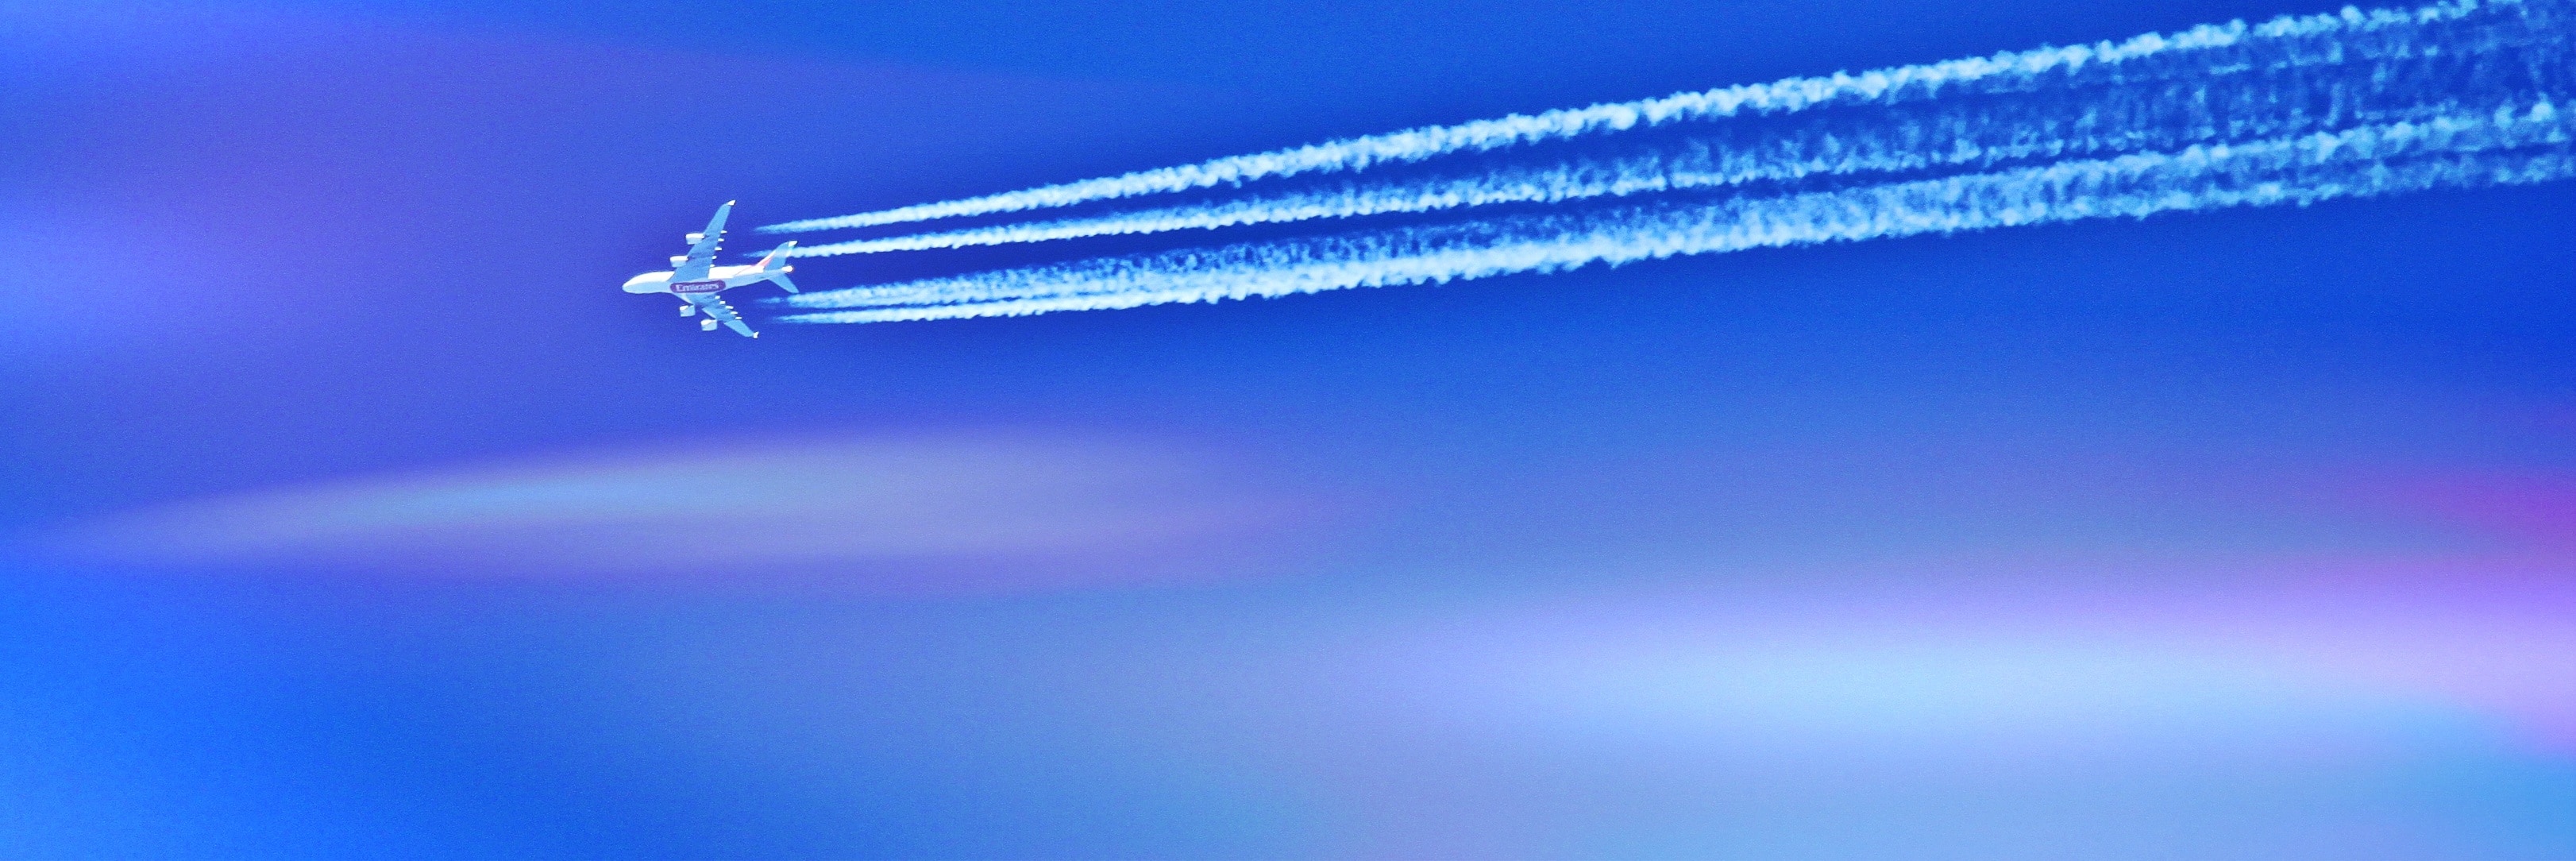 white plane and blue sky